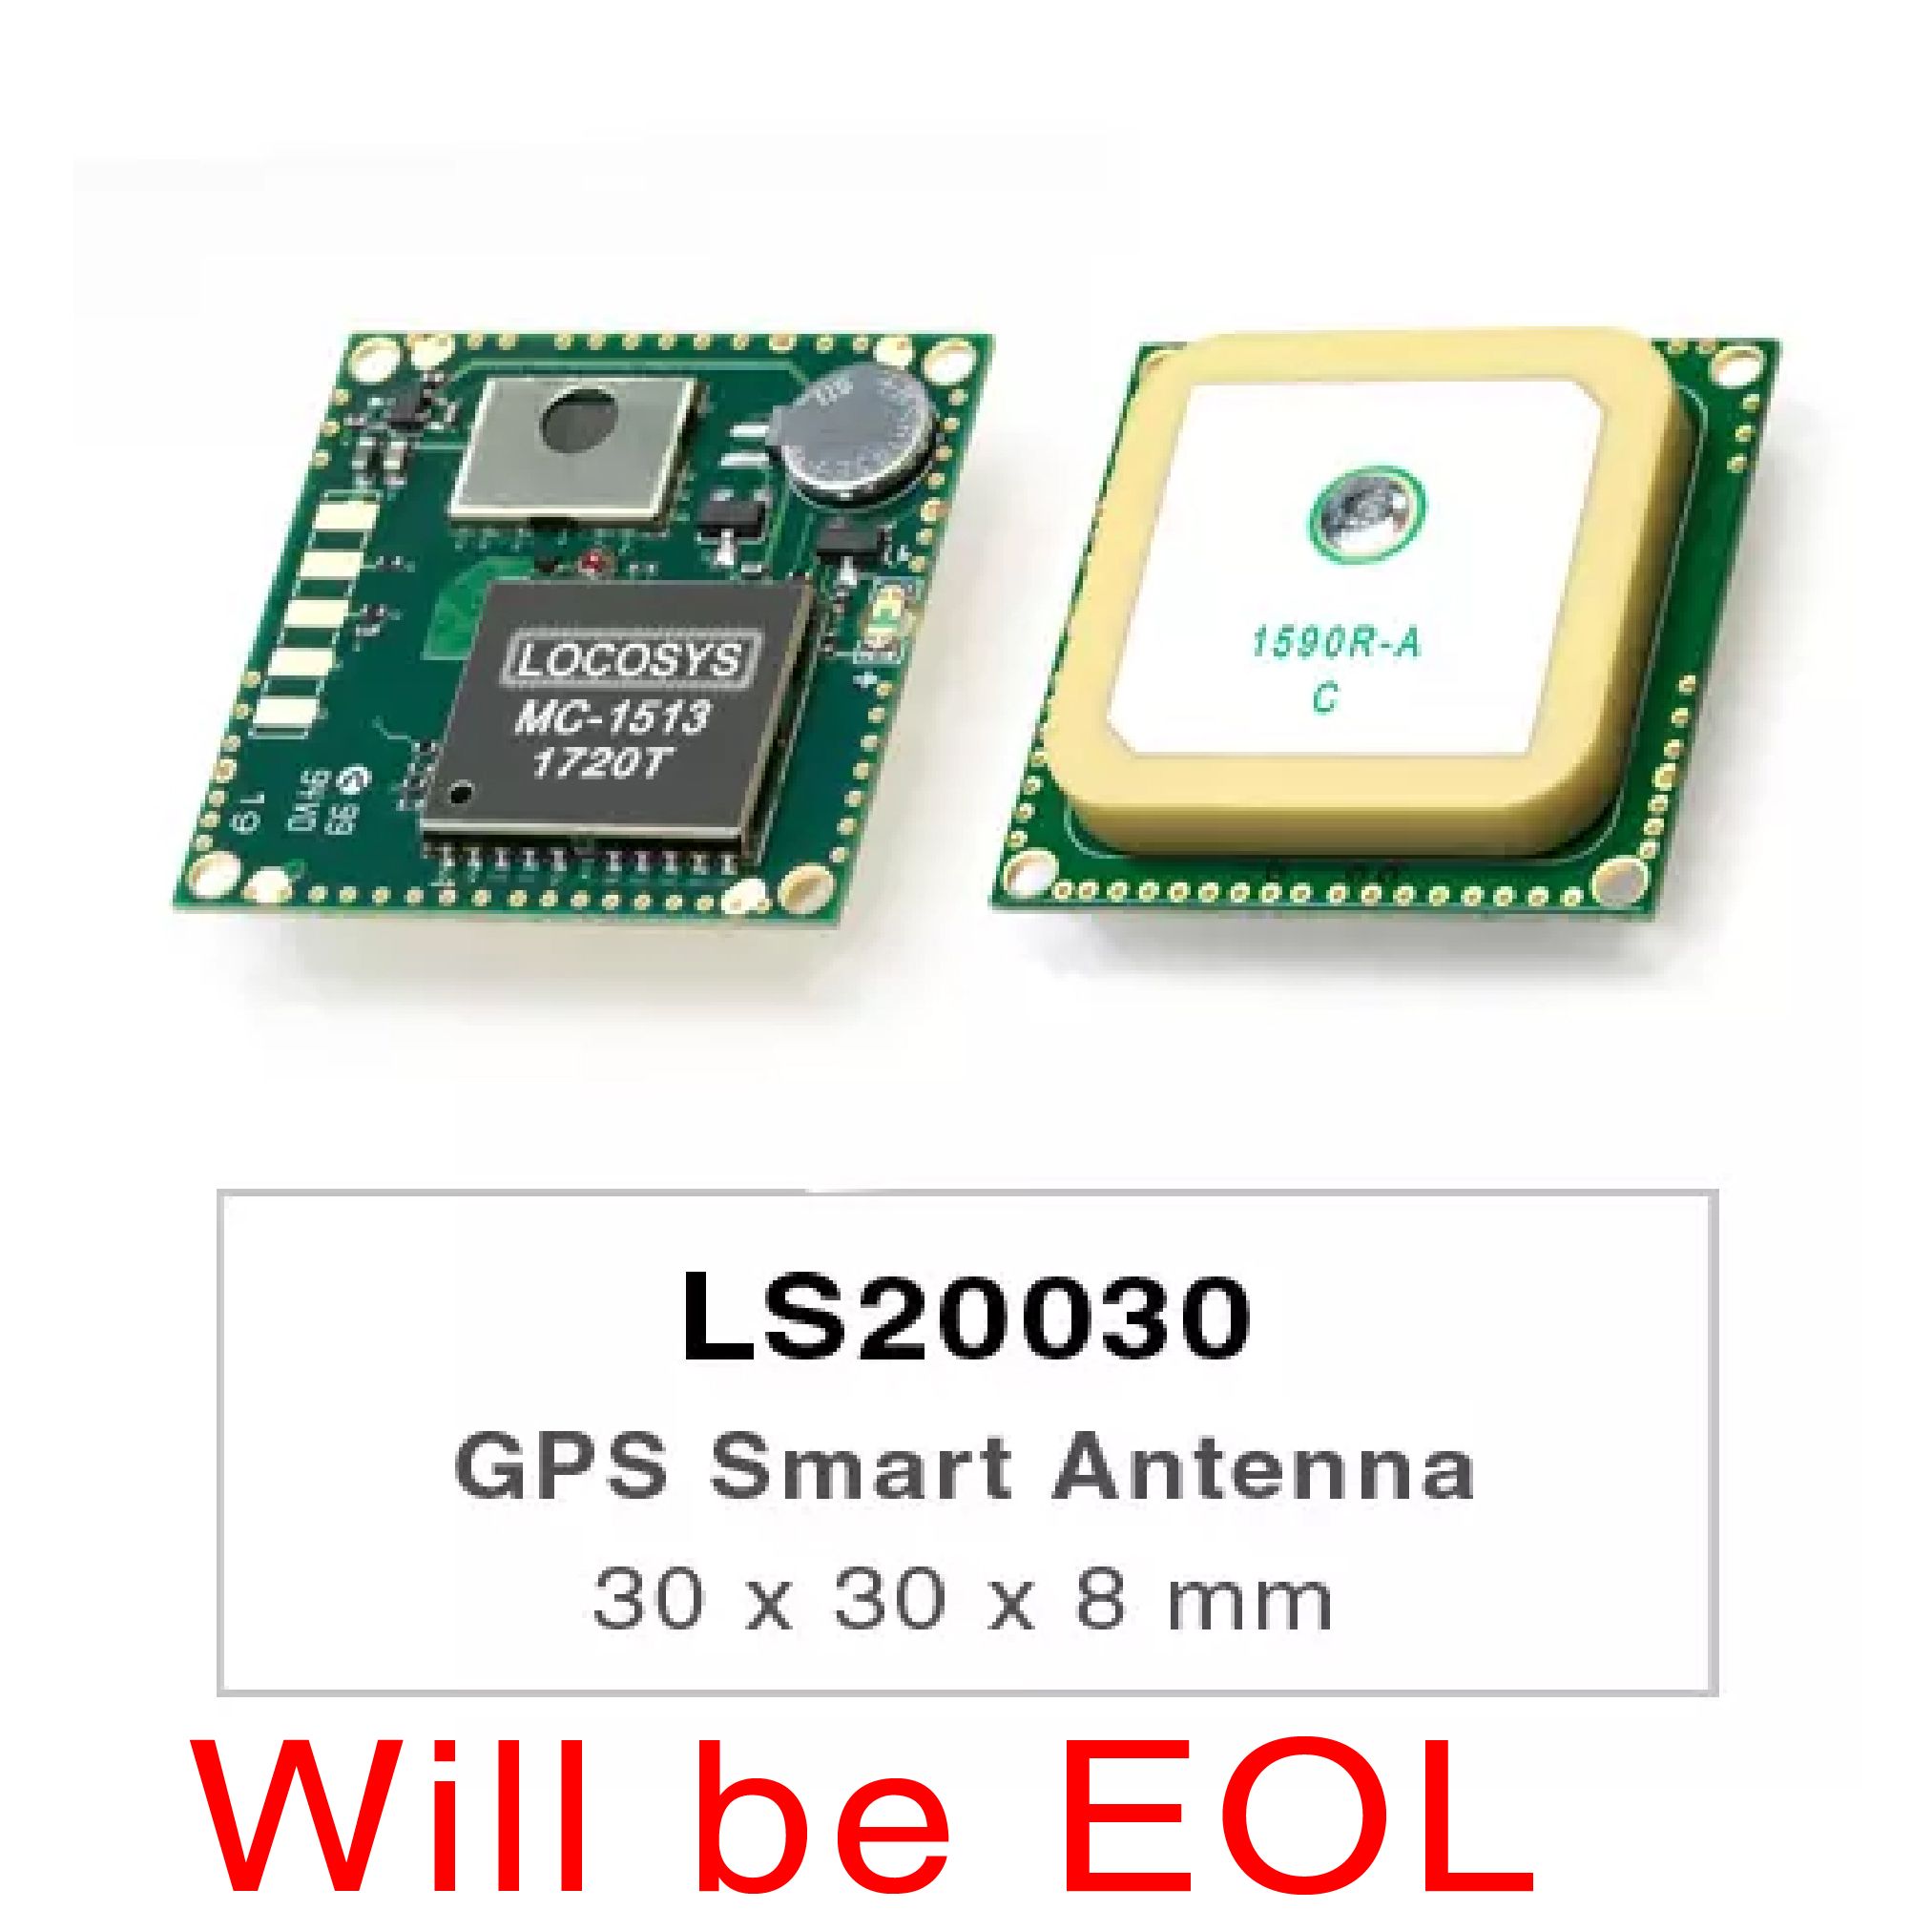 Die Produkte der LS20030/31/32-Serie sind komplette GPS-Smart-Antennenempfänger, einschließlich einer eingebetteten Antenne und GPS-Empfängerschaltkreisen, die für ein breites Spektrum von OEM-Systemanwendungen ausgelegt sind.